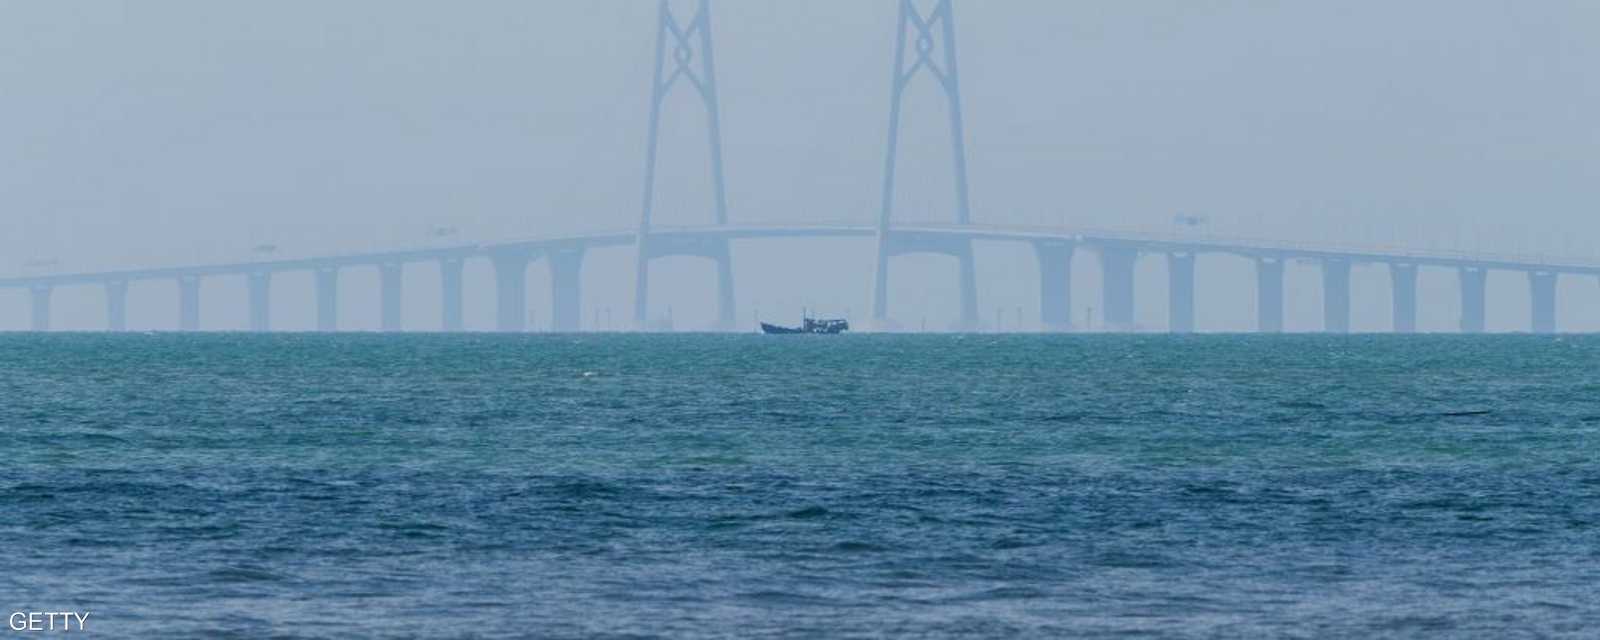 افتتاح أكبر جسر بحري في العالم يوم الثلاثاء